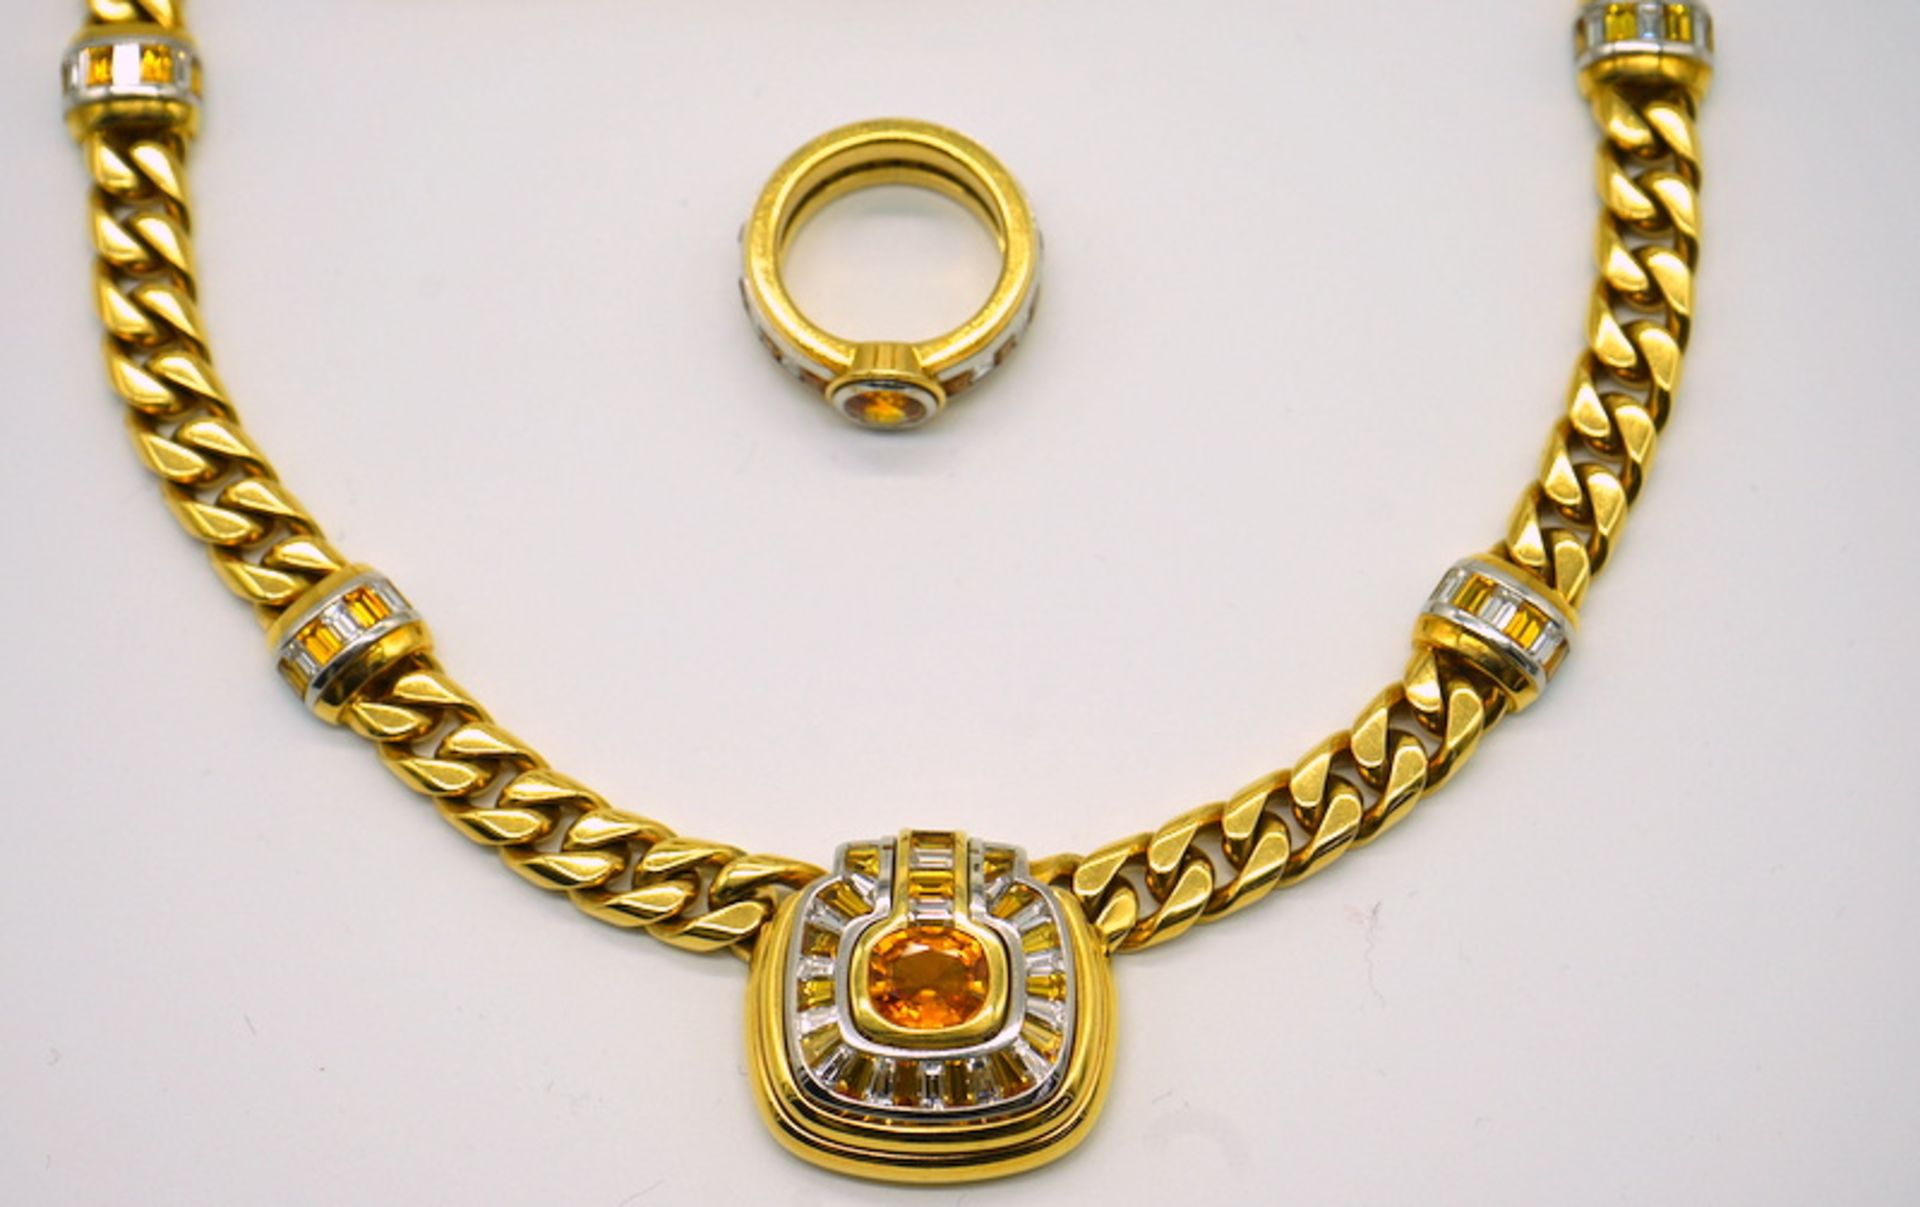 Parure mit Diamanten und gelben Saphiren, 750 GG, Juweliersanfertigung - Image 6 of 10